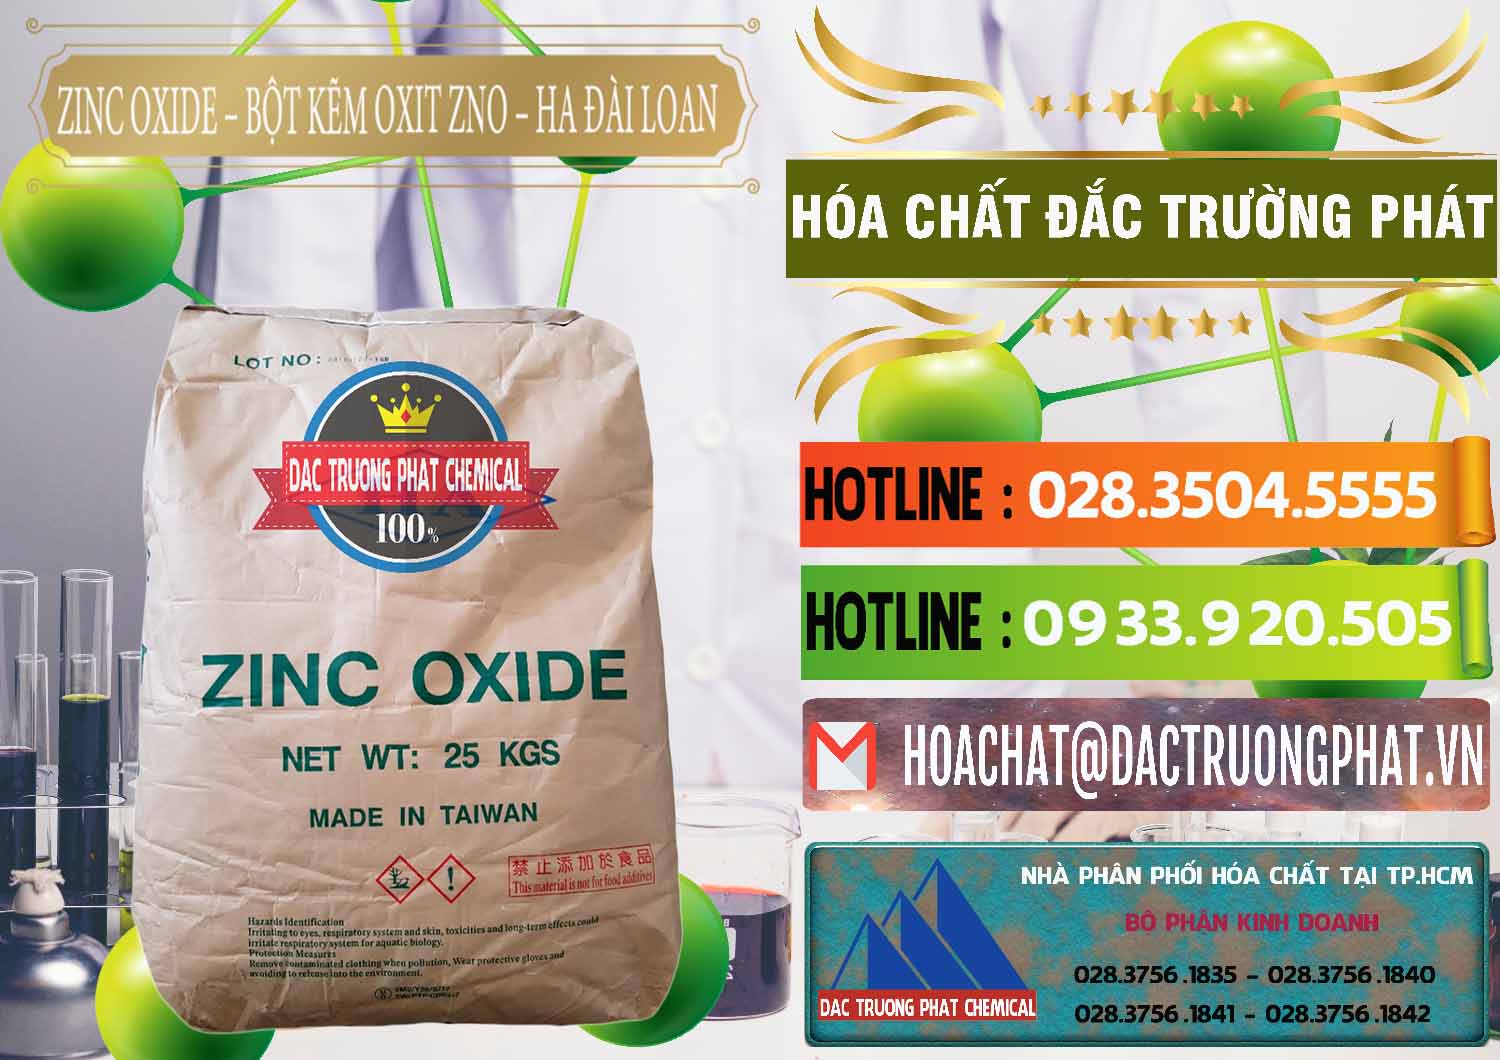 Cty chuyên nhập khẩu và bán Zinc Oxide - Bột Kẽm Oxit ZNO HA Đài Loan Taiwan - 0180 - Đơn vị kinh doanh - cung cấp hóa chất tại TP.HCM - cungcaphoachat.com.vn